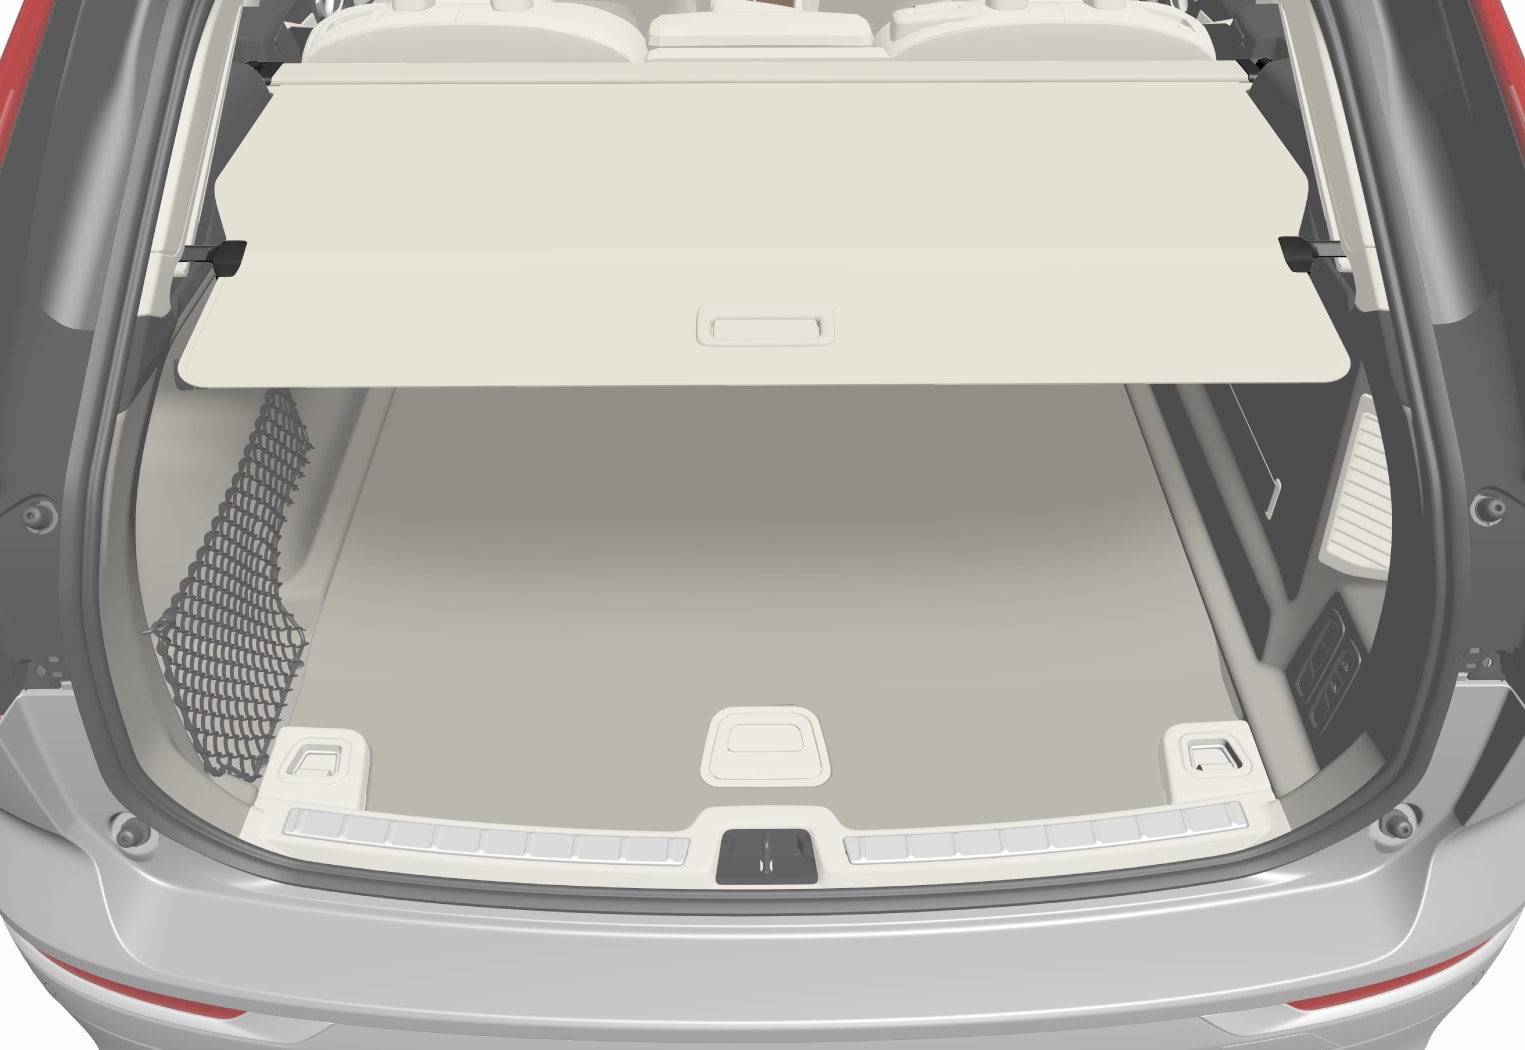 V60 Gepäckraumabdeckung bedienen | Volvo Support DE